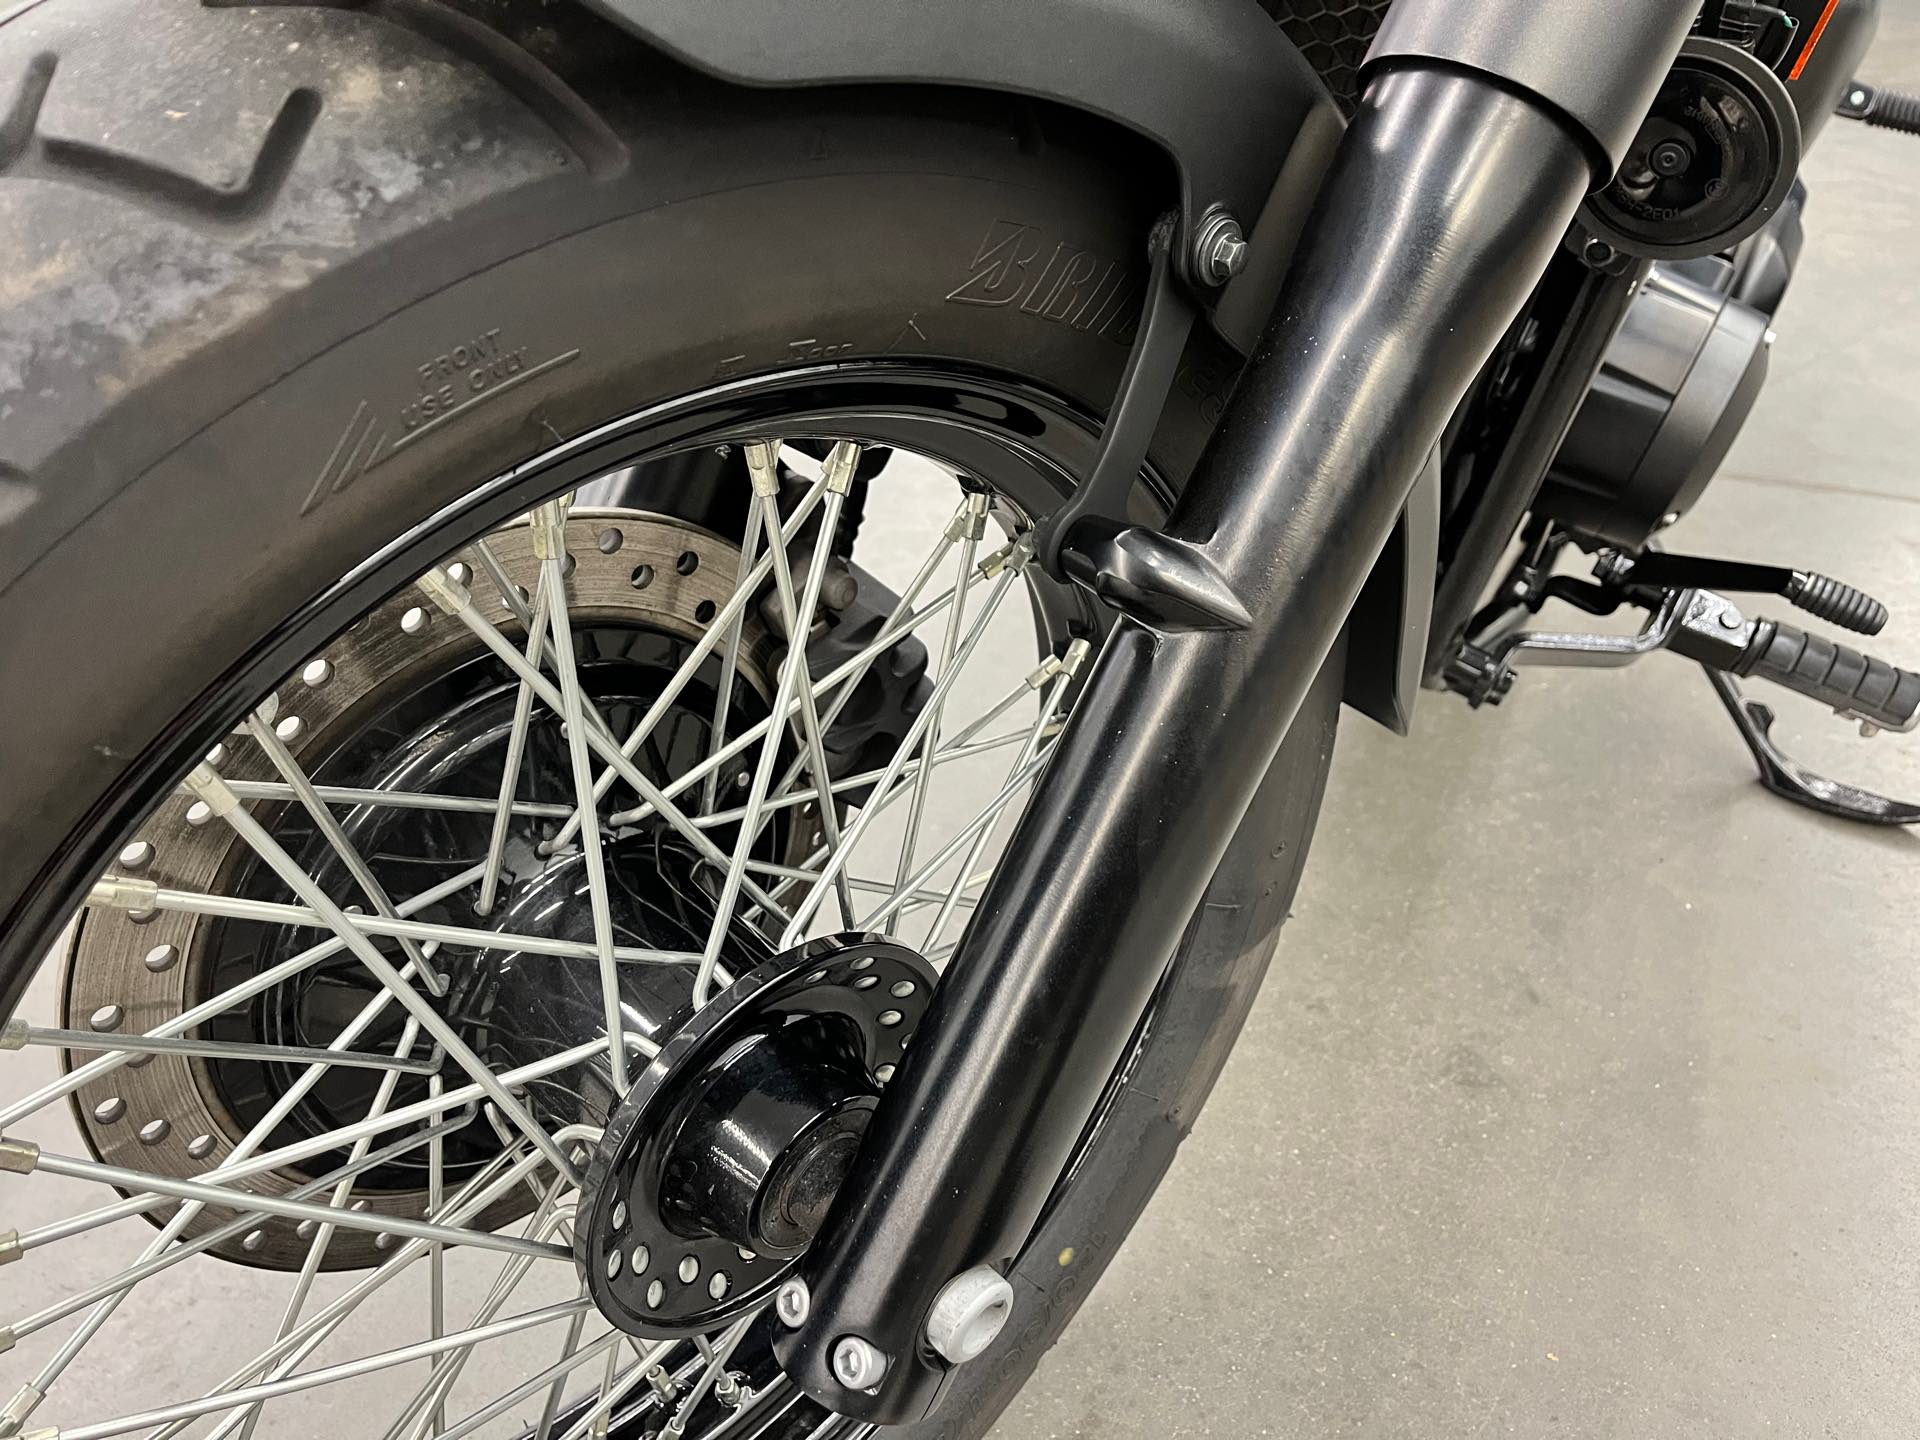 2018 Honda Shadow Phantom at Aces Motorcycles - Denver